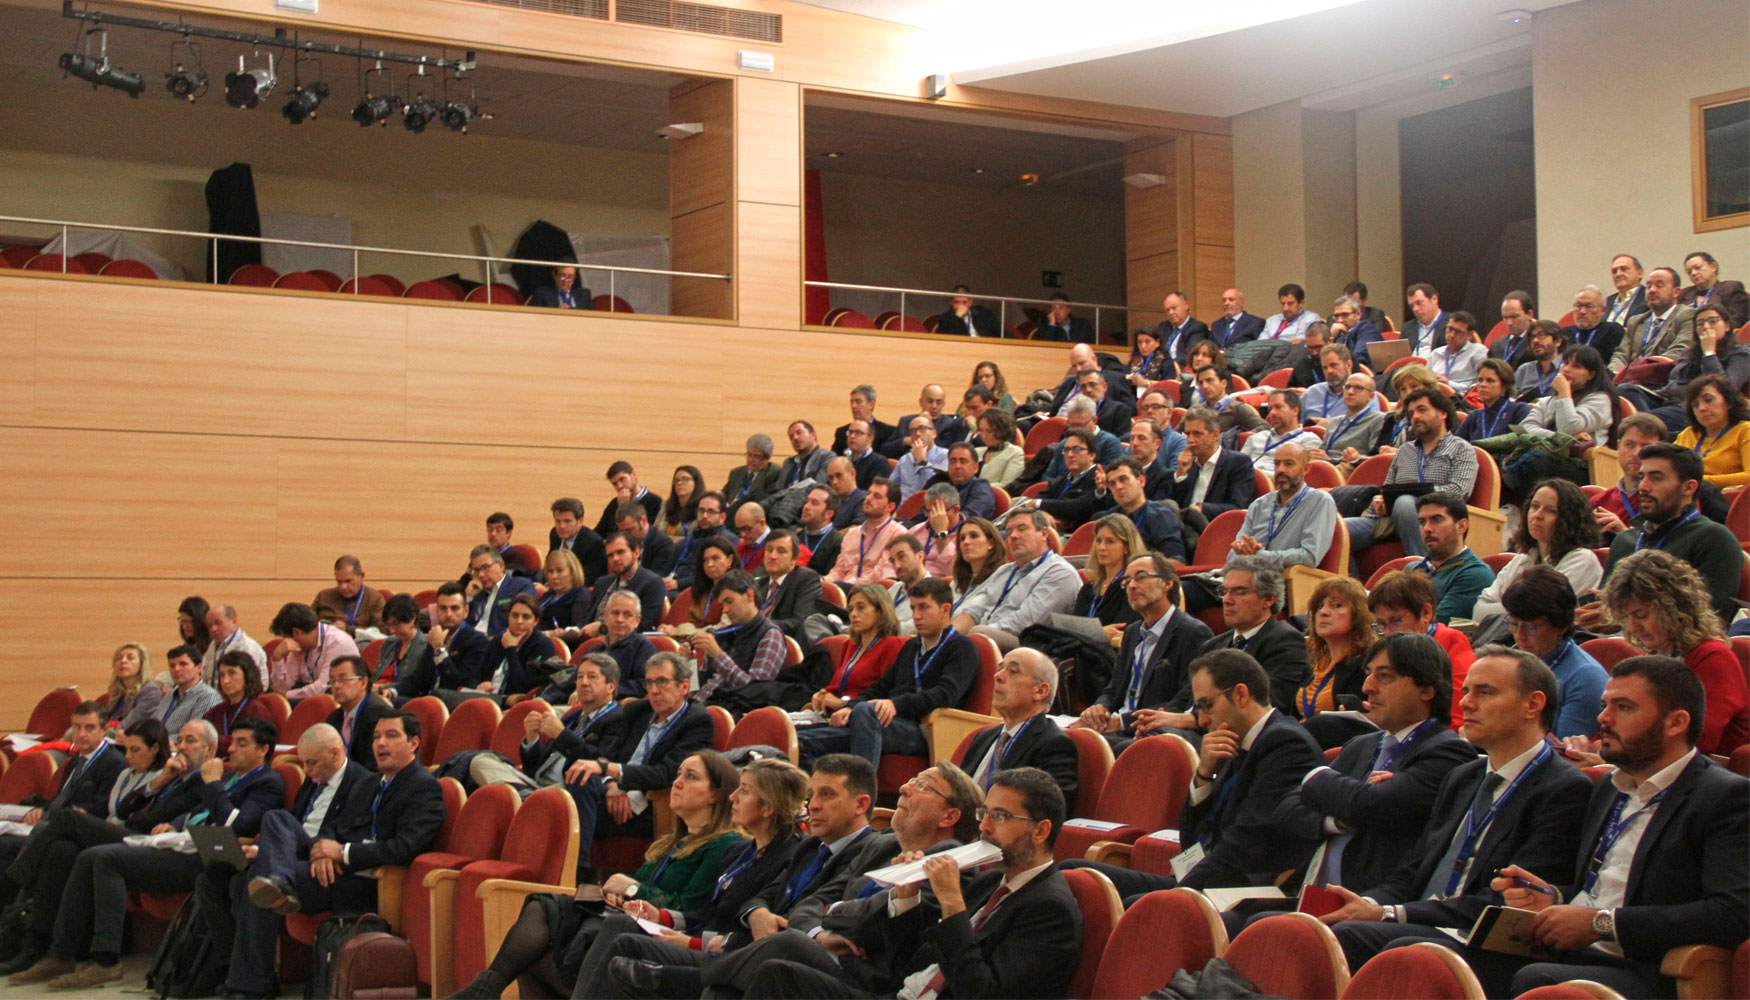 326 congresistas llenaron el Saln de Acto de la Escuela Tcnica Superior de Ingenieros Industriales de Madrid